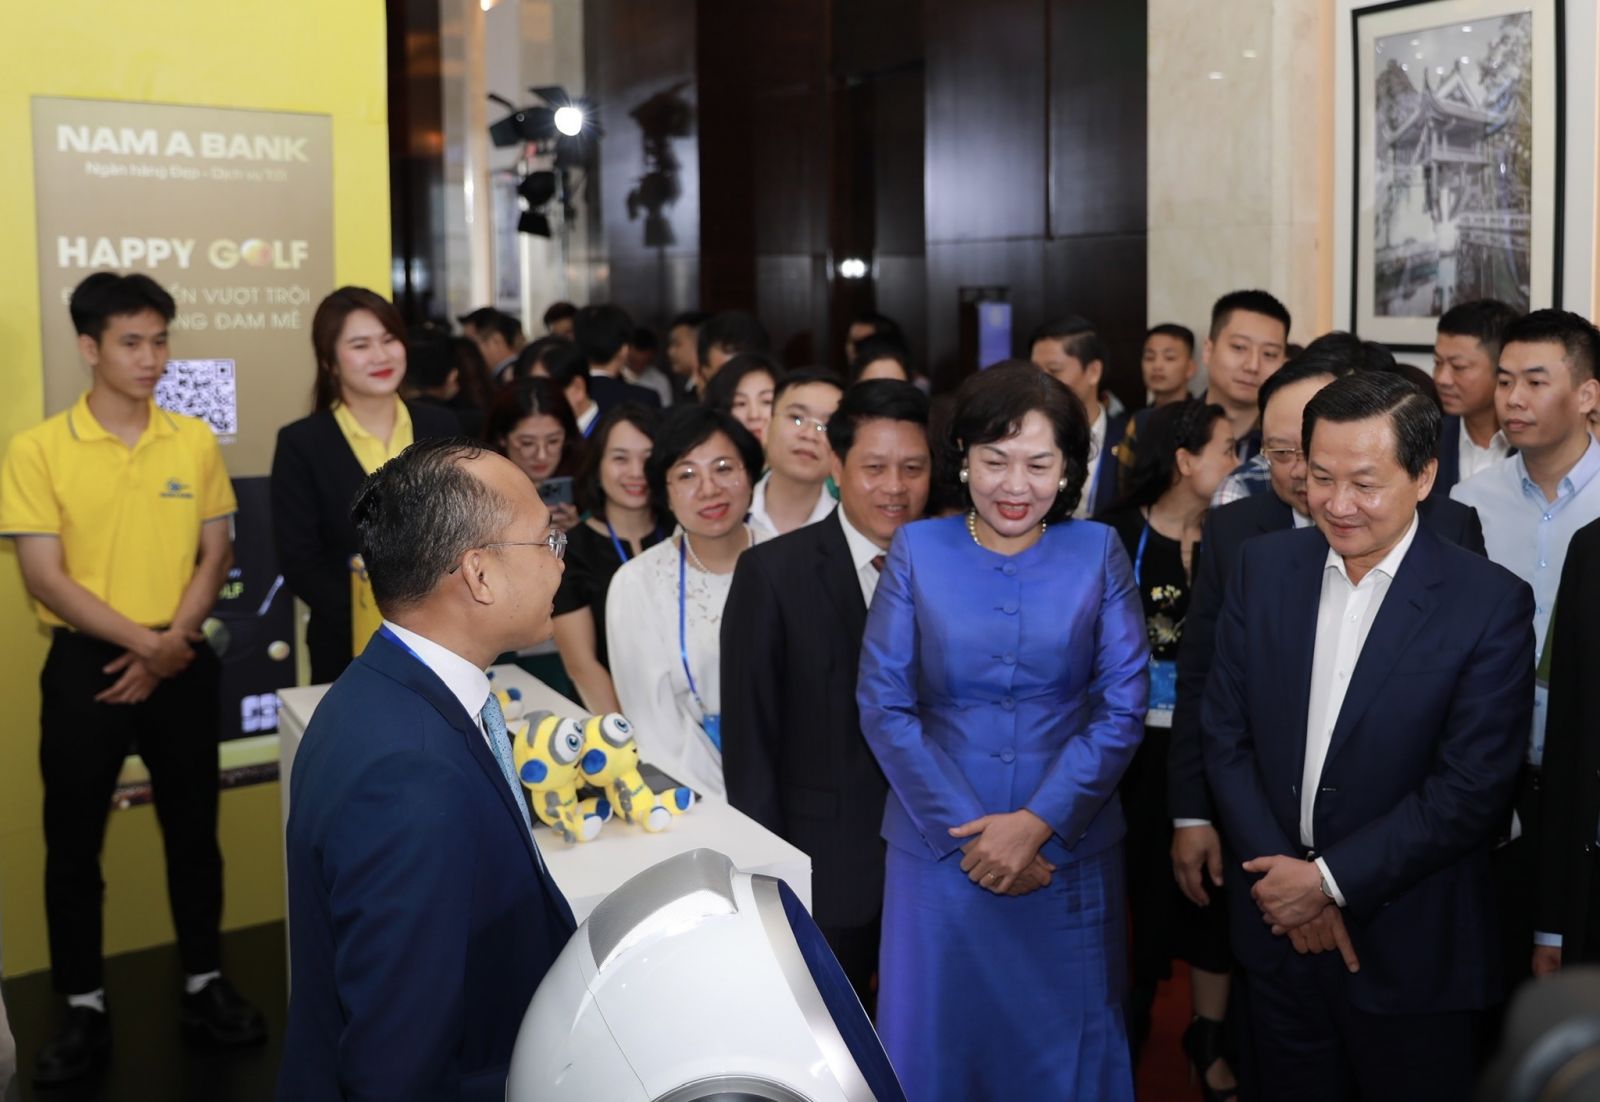 Phó Thủ tướng Chính phủ Lê Minh Khái và Thống đốc NHNN Nguyễn Thị Hồng cùng đoàn đại biểu tham quan hệ sinh thái Ngân hàng số Nam A Bank.